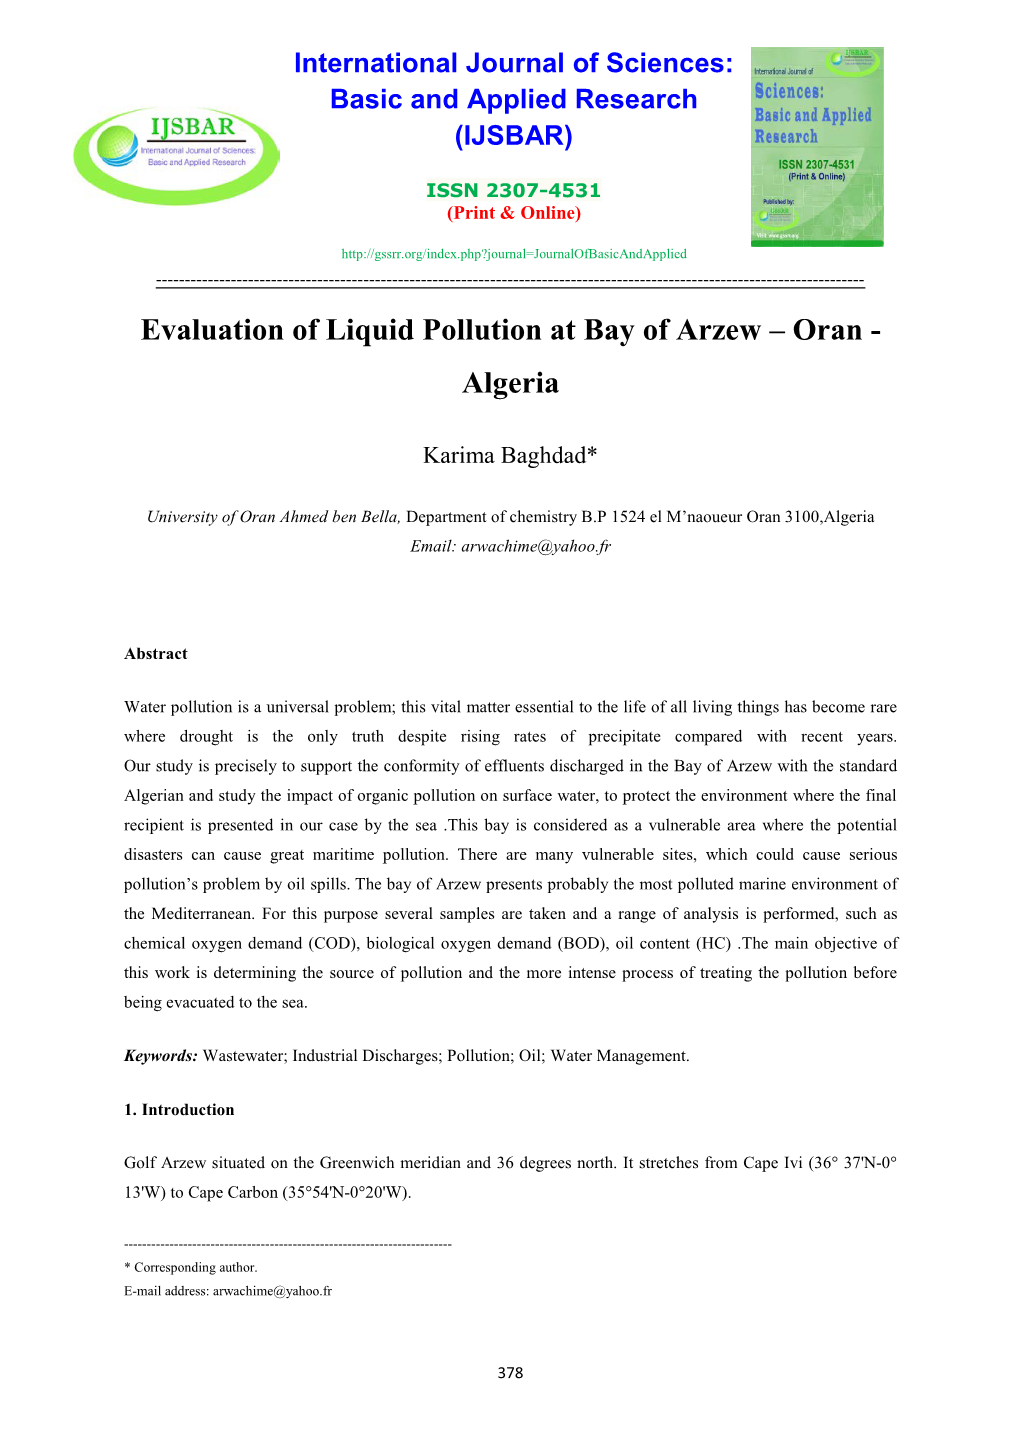 Evaluation of Liquid Pollution at Bay of Arzew – Oran - Algeria